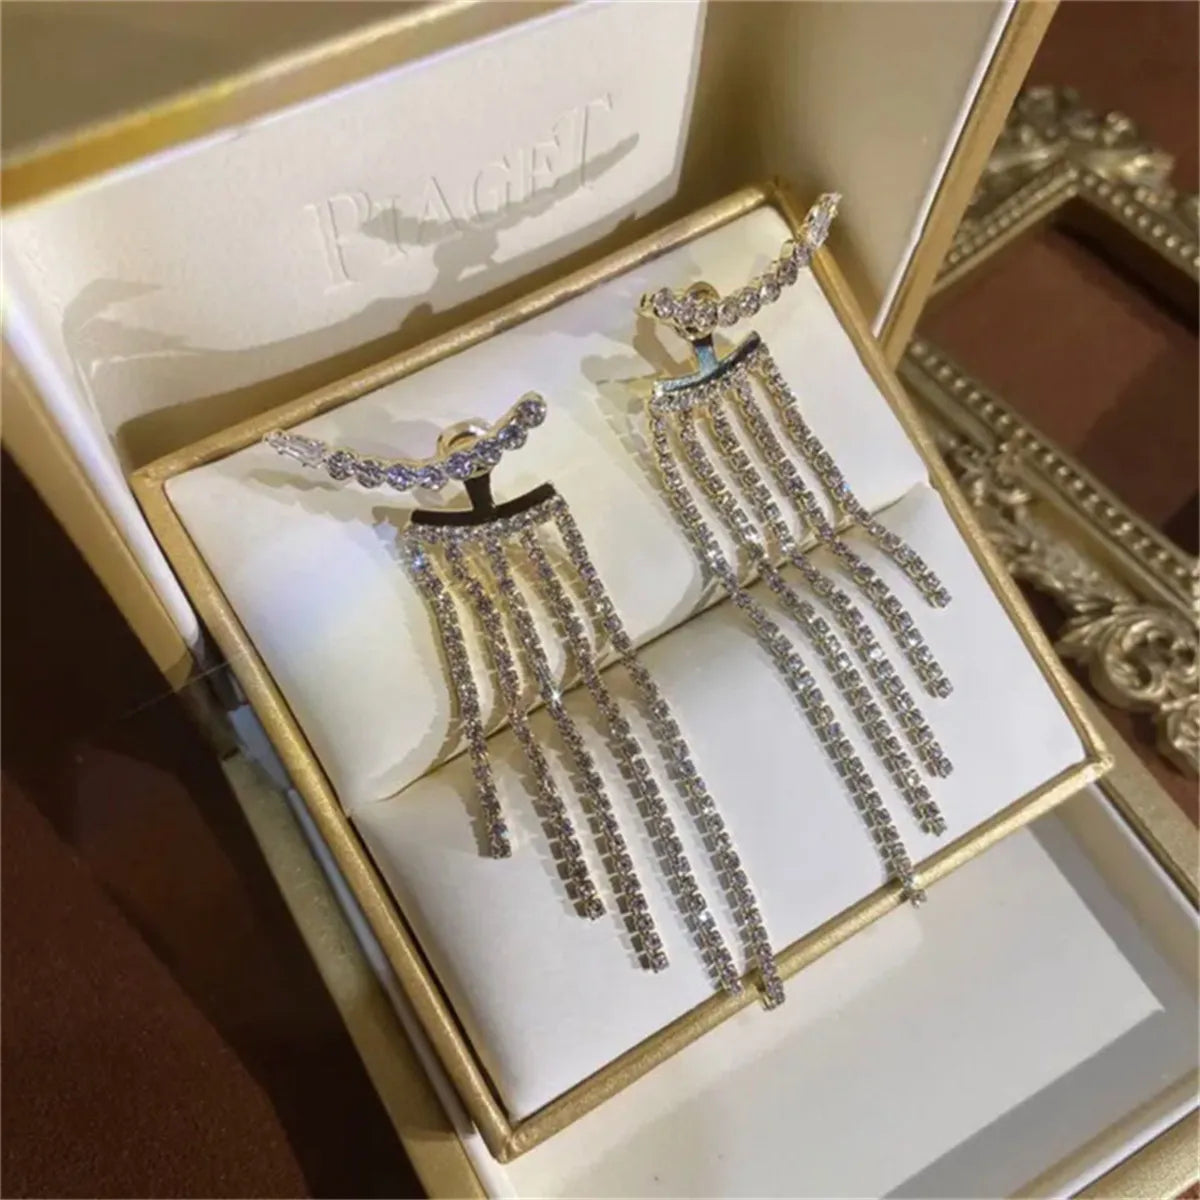 ClassyLuxe - Crystal Luxury Earrings - Elegant Jewelry